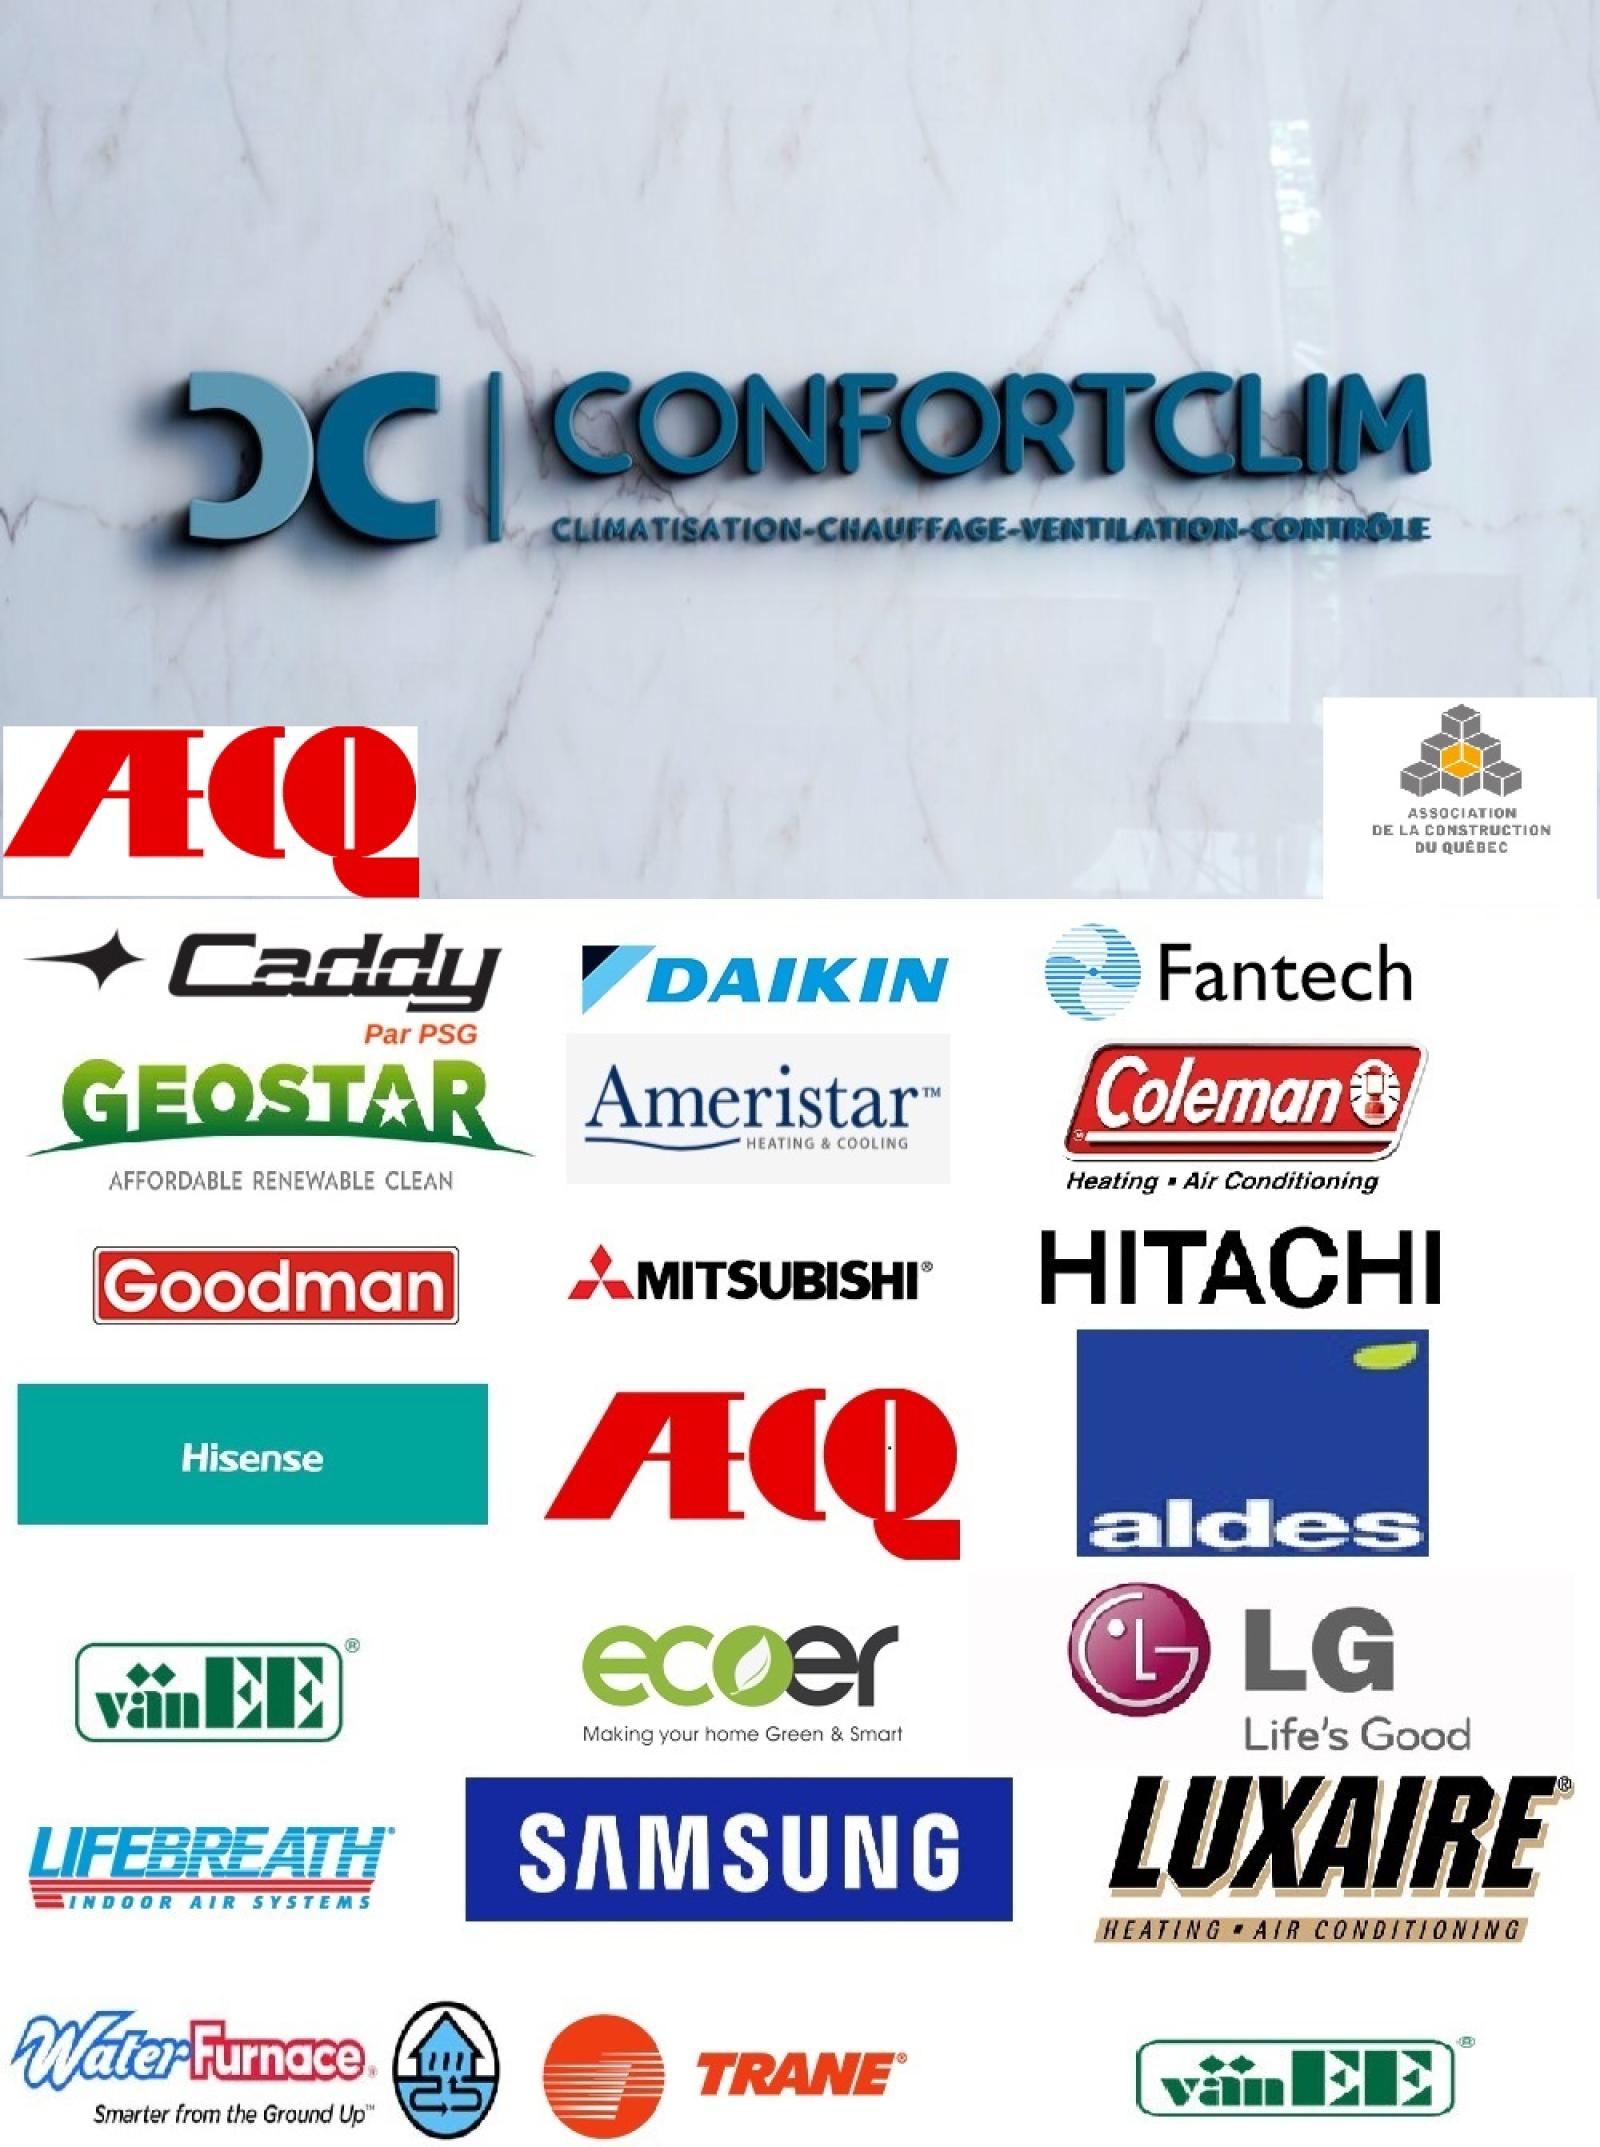 ConfortClim Climatisation, Ventilation, Chauffage, Contrôle Logo